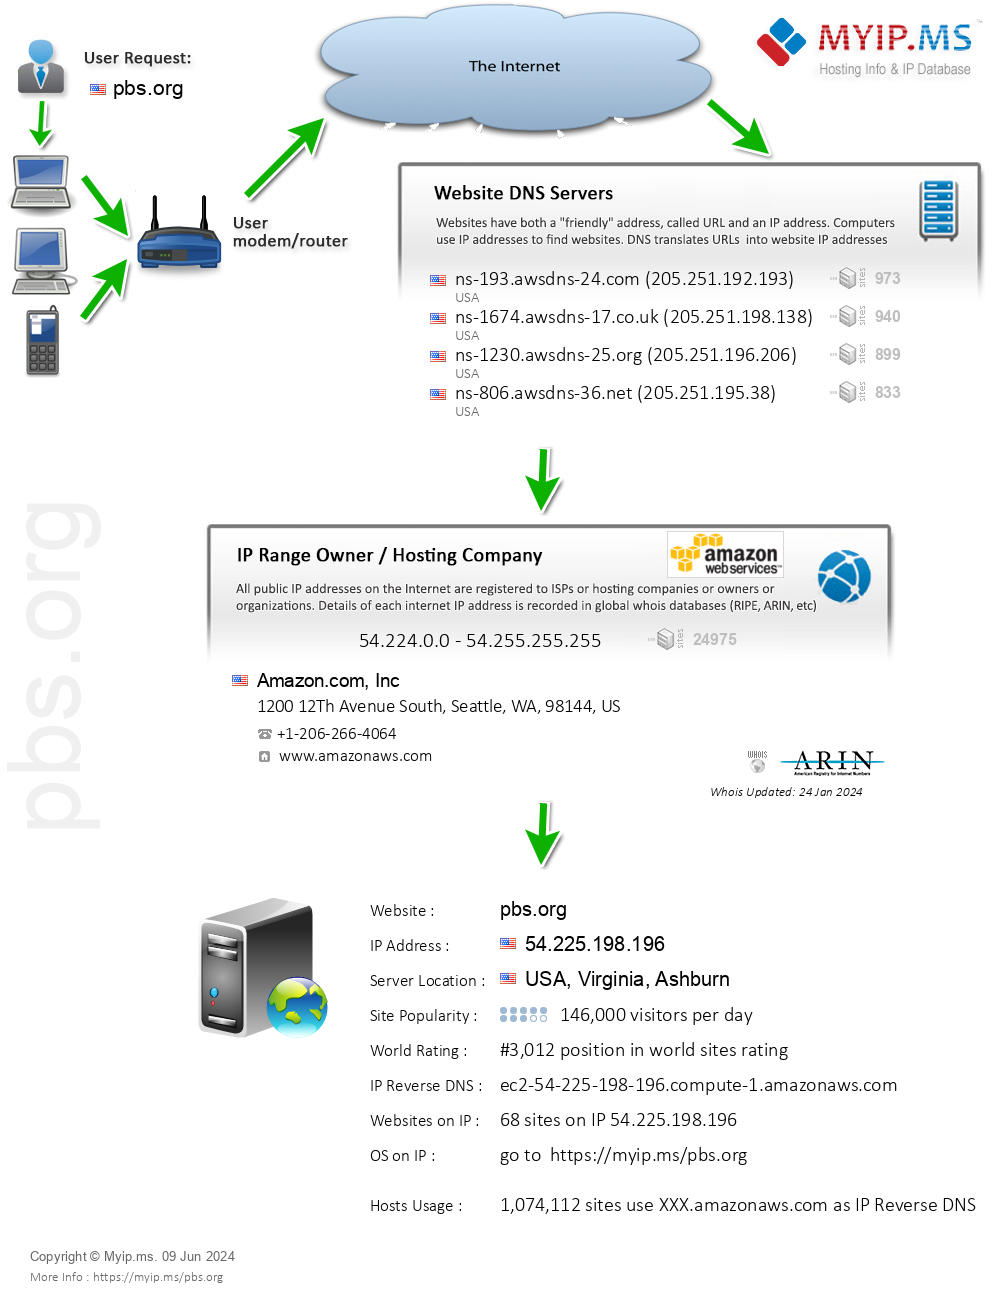 Pbs.org - Website Hosting Visual IP Diagram